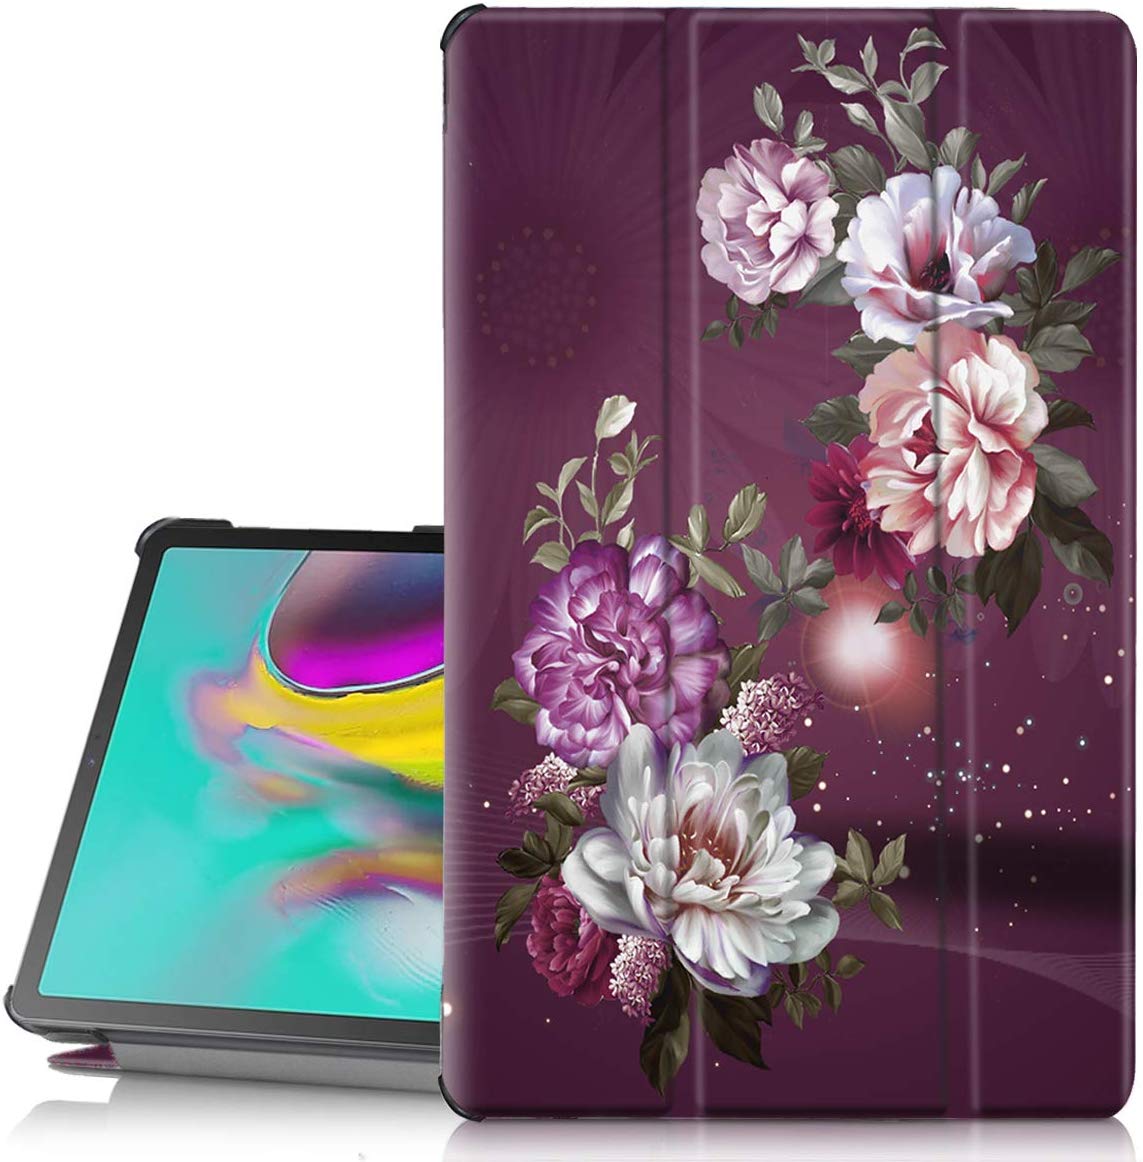 Hocase Galaxy Tab S5e Case